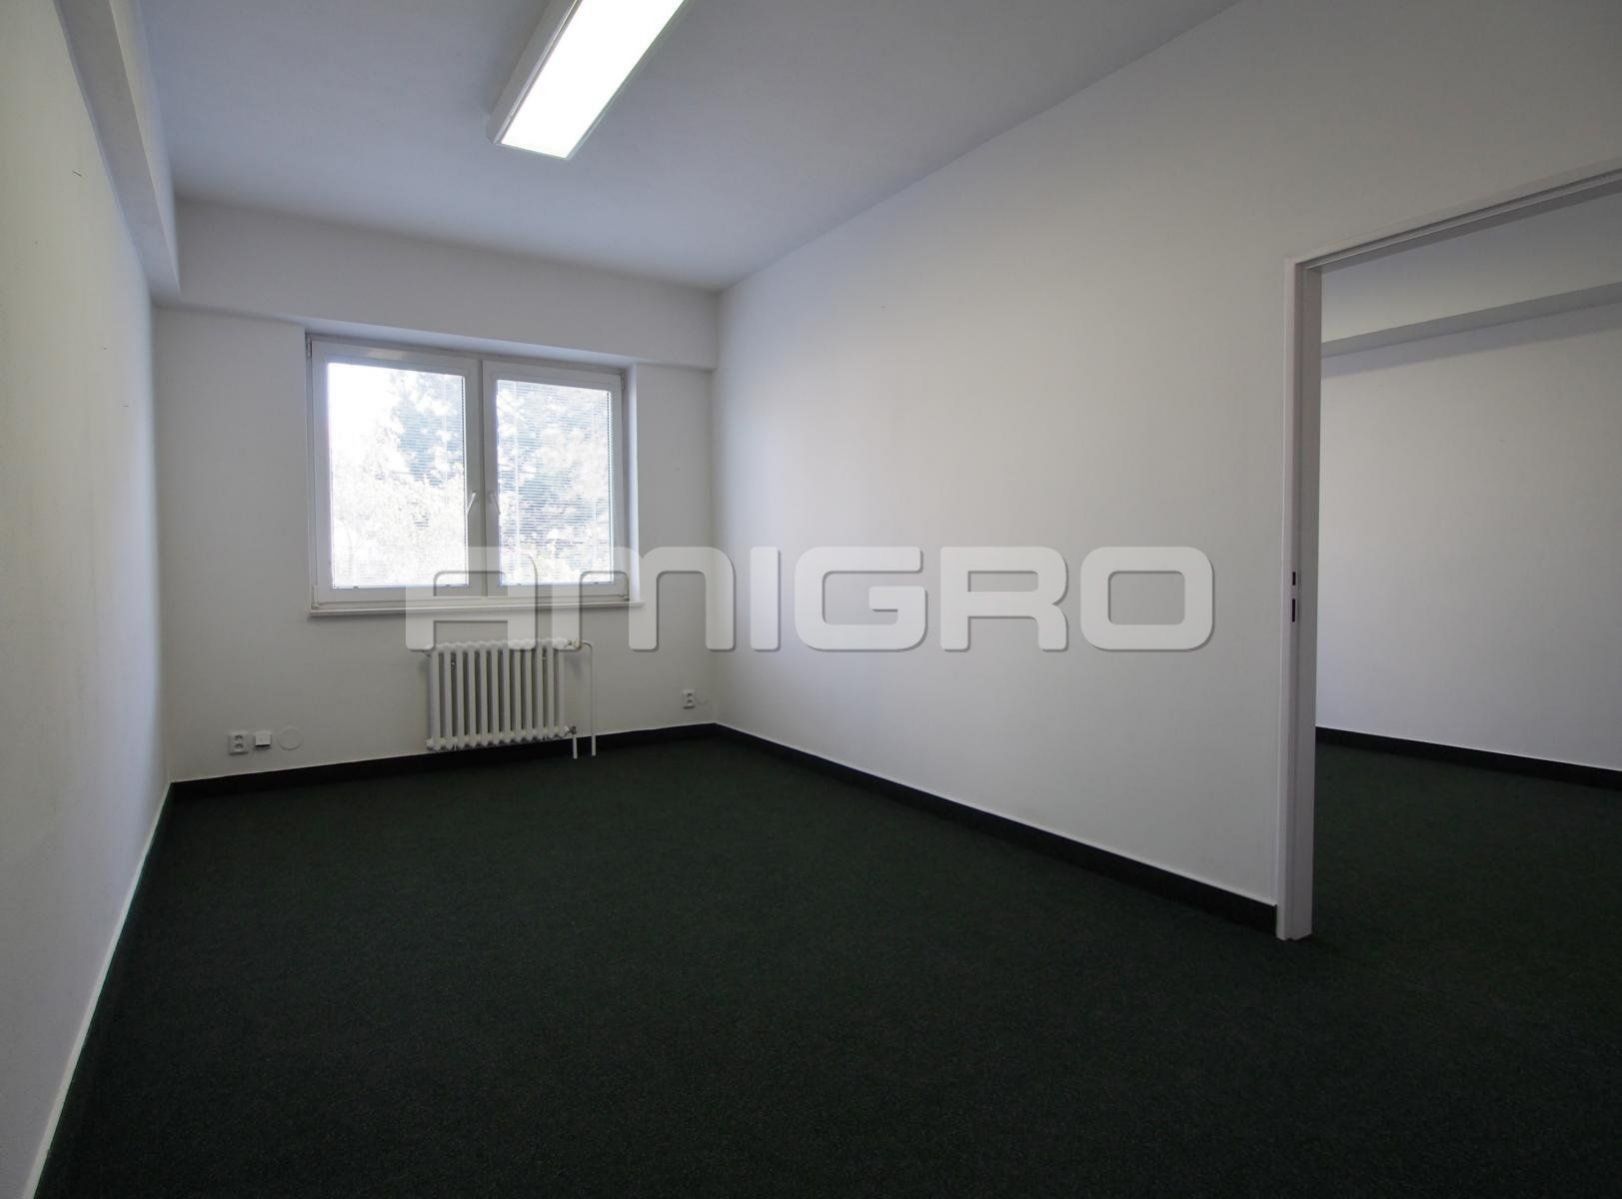 Pronájem kanceláří s vlastním sociálním zařízením a kuchyňkou, 39 m2 - Brno - Židenice, ul. Věstonic